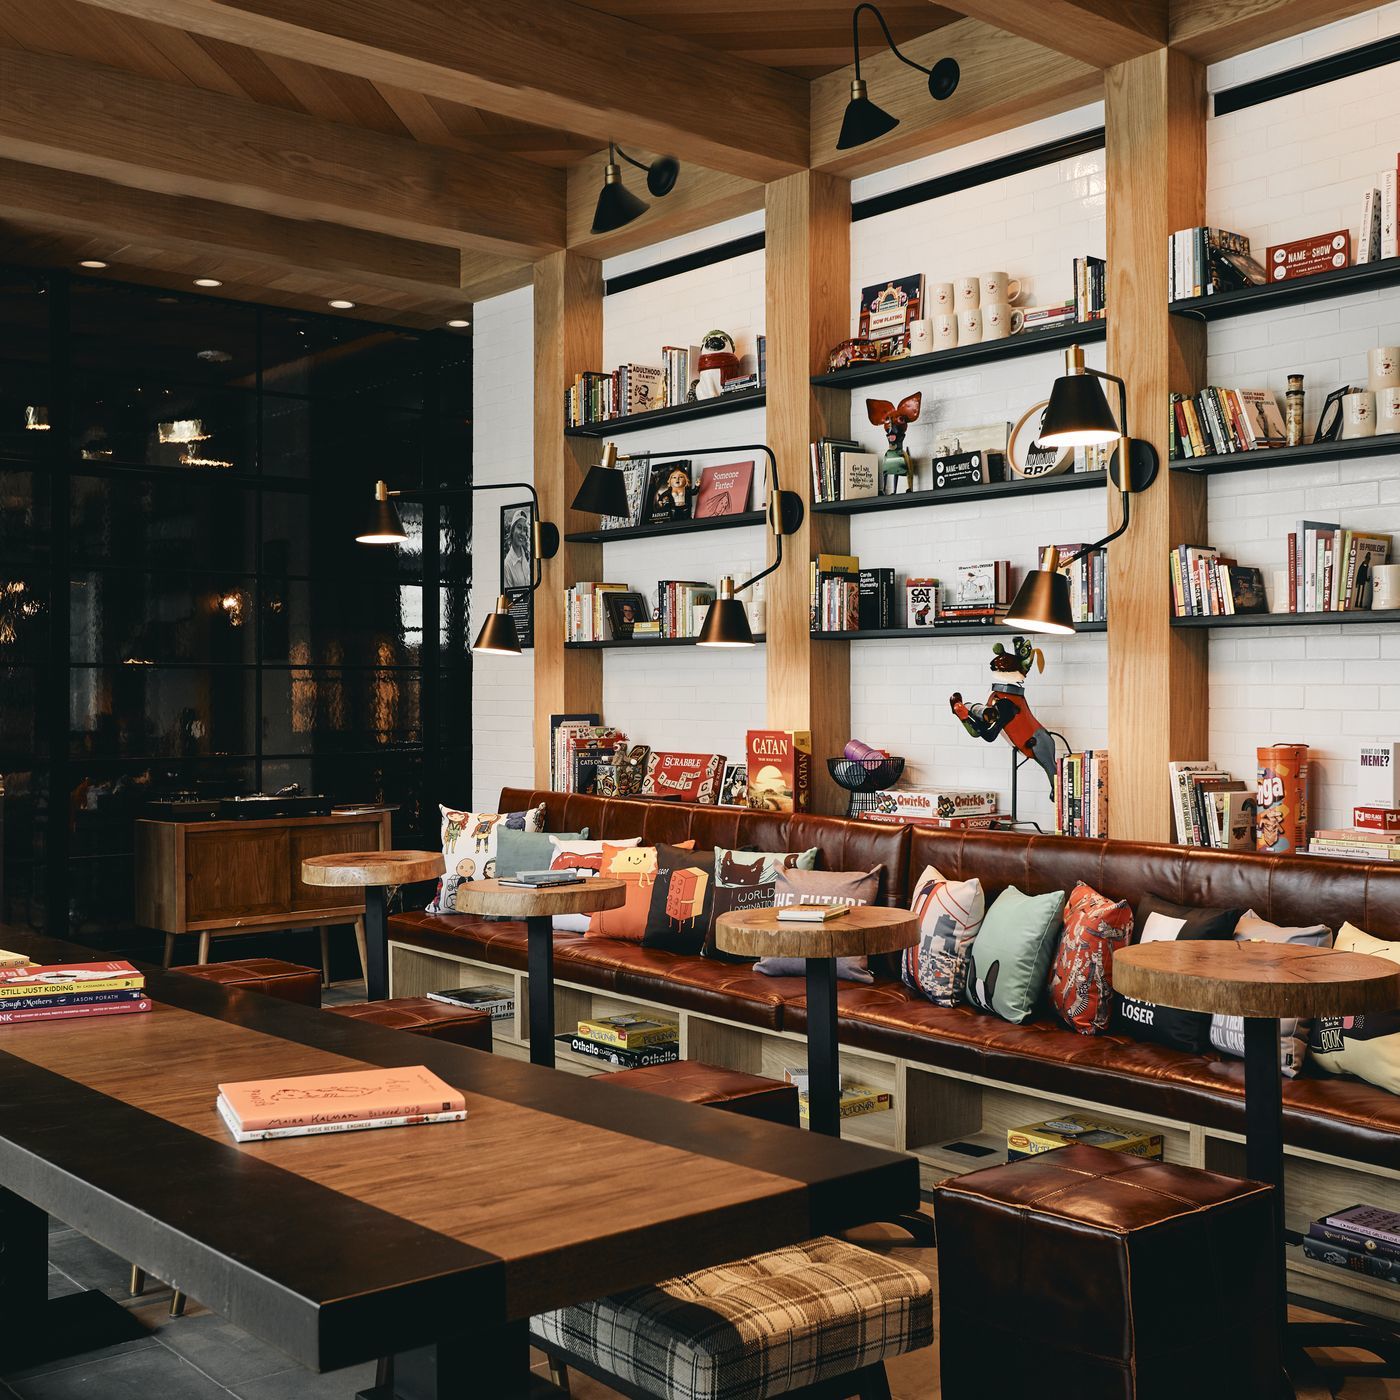 Một mẫu thiết kế quán cà phê sách khá đẹp mắt